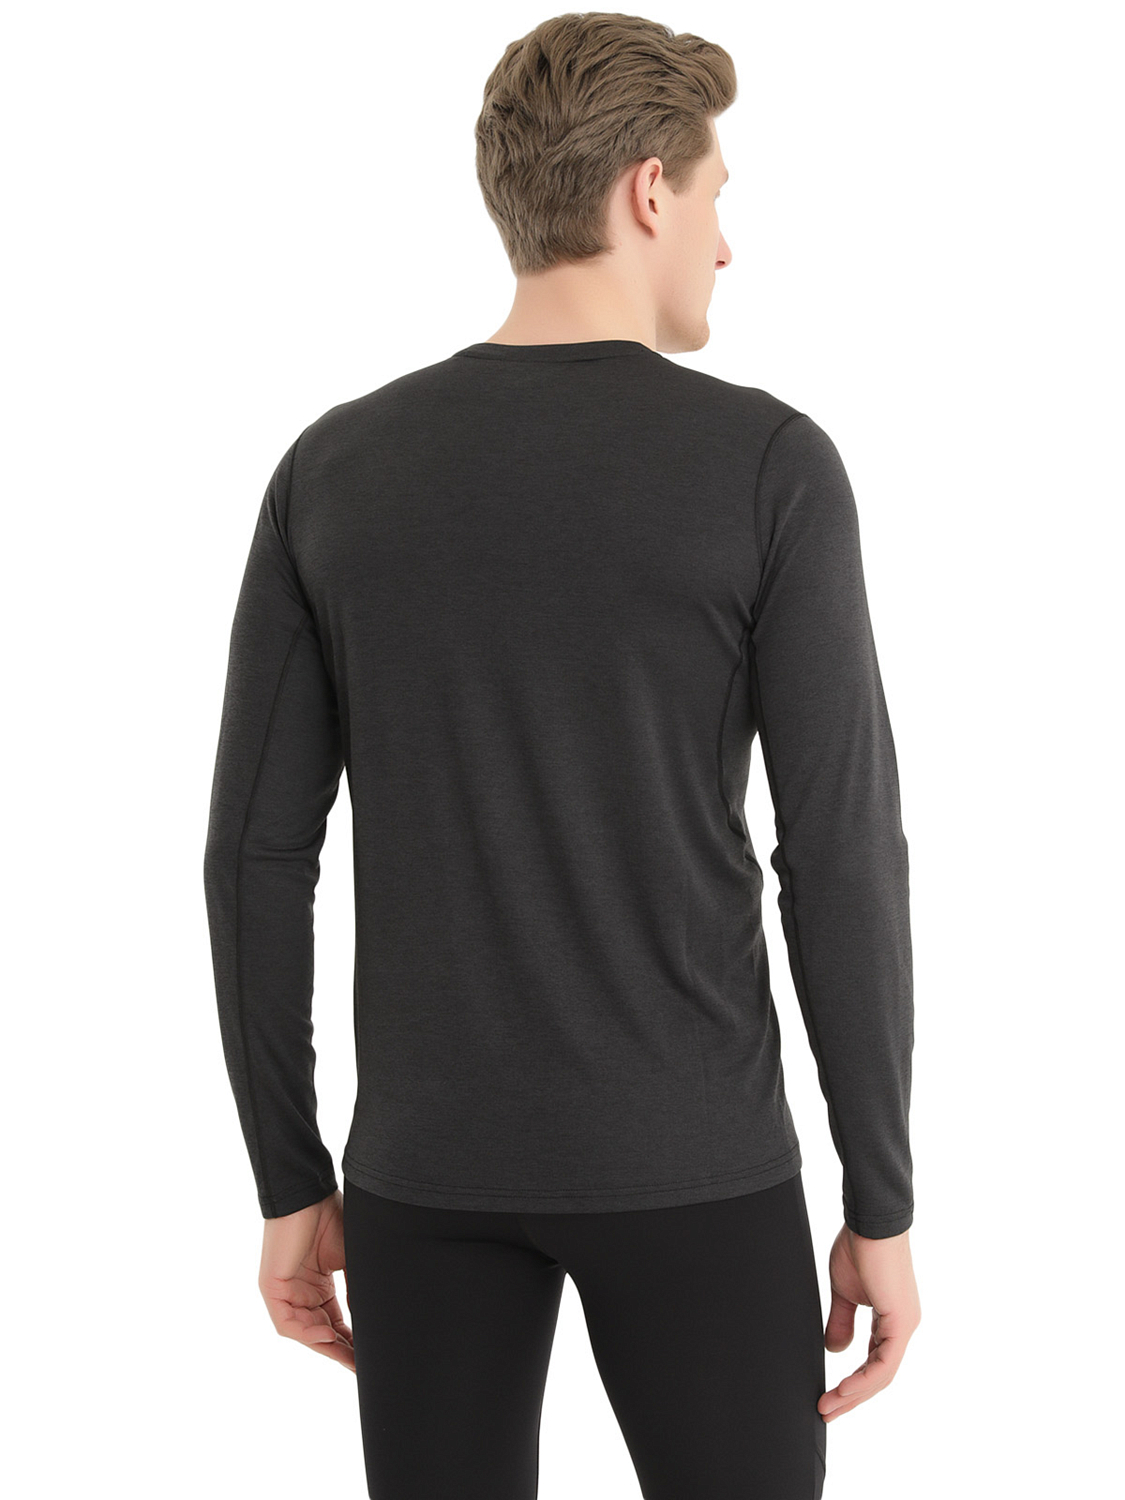 Футболка с длинным рукавом для активного отдыха Montane Dart Long Sleeve T-Shirt Black